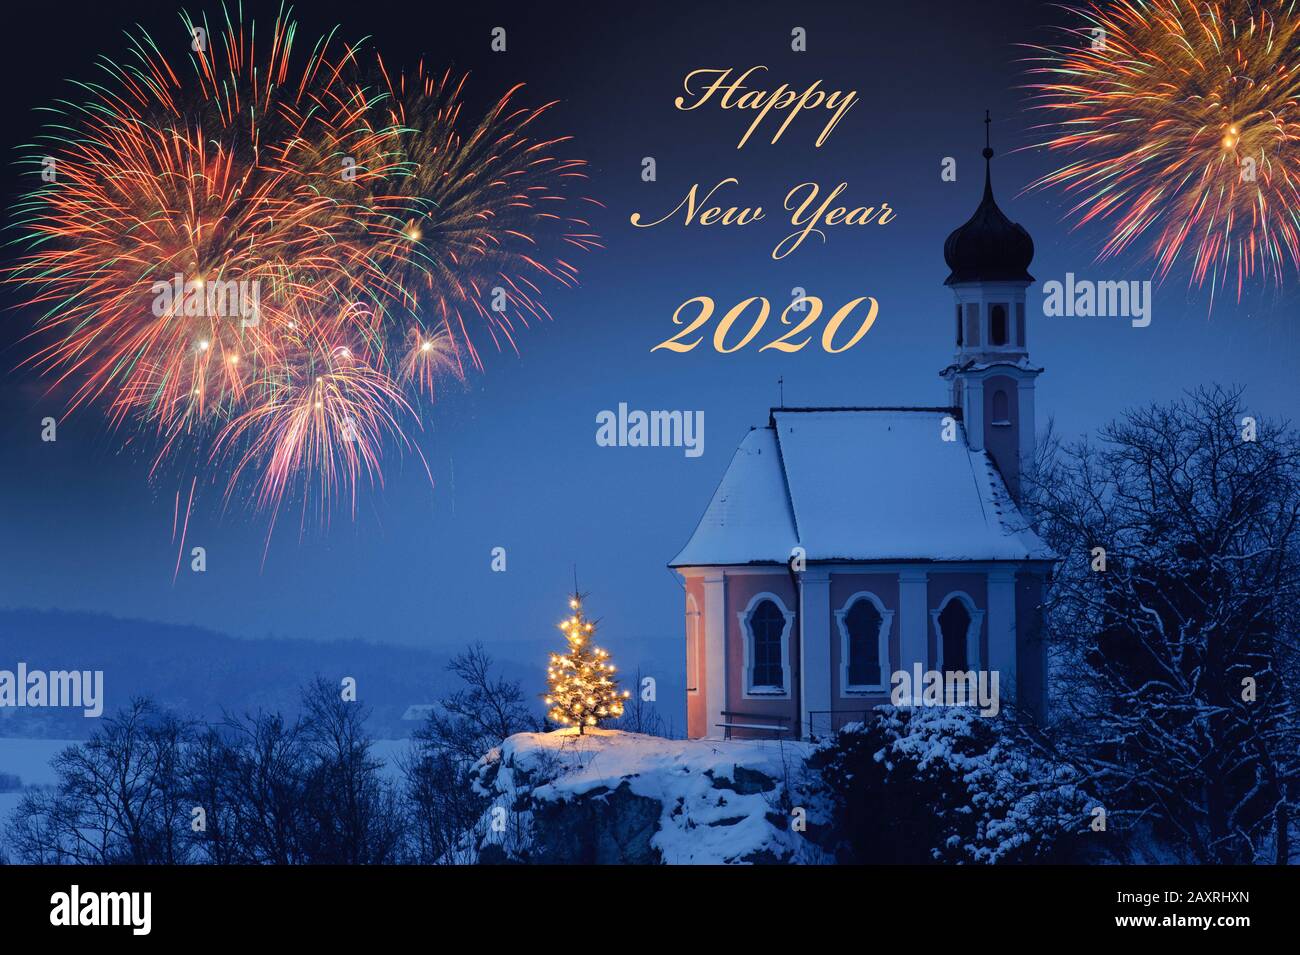 Réveillon du nouvel an et nouvel an 2020, carte de vœux avec feux d'artifice et paysage d'hiver Banque D'Images